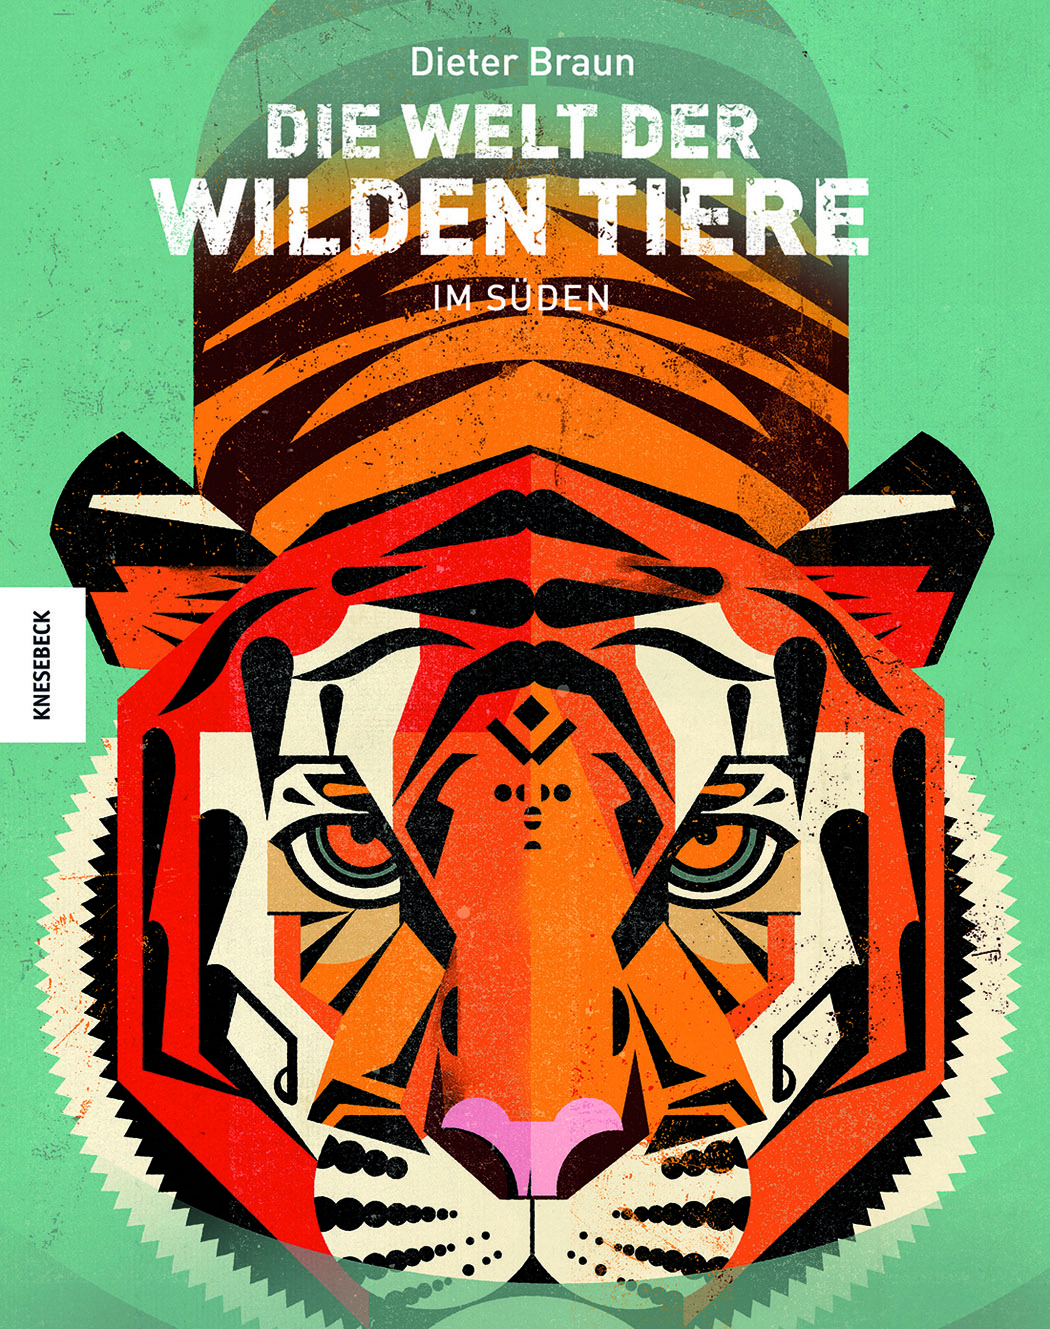 Wild Animals by Dieter Braun